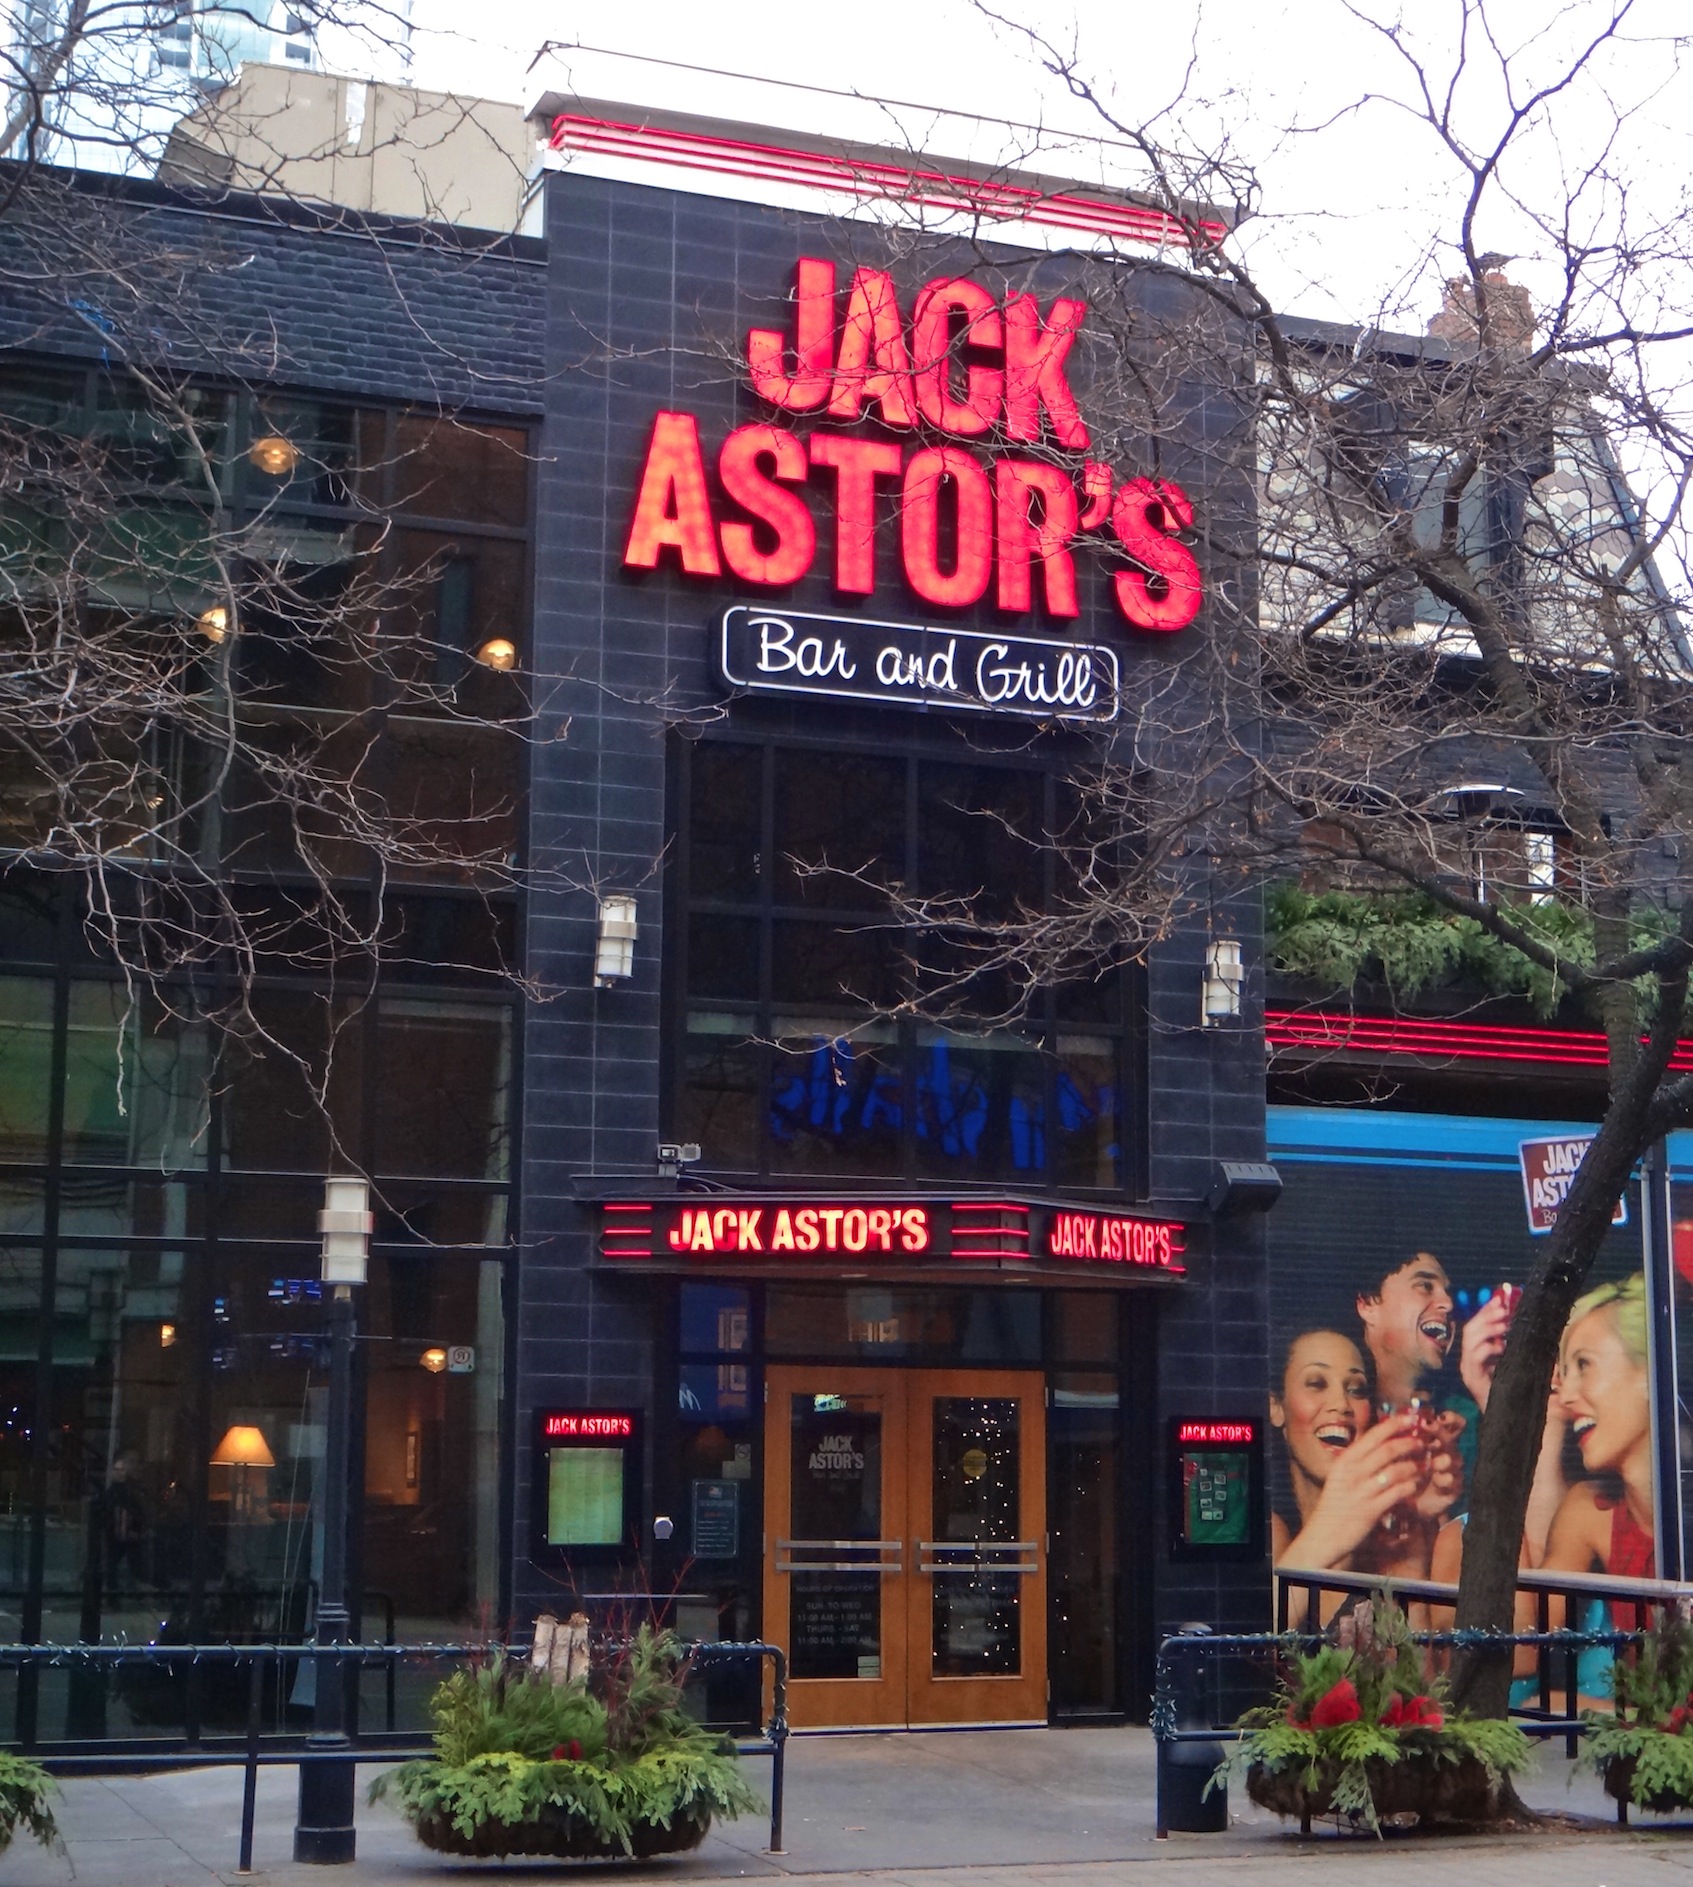 Fremragende Afhængighed Tag et bad Jack Astor's Bar & Grill Menu Review - The Naked LabelThe Naked Label